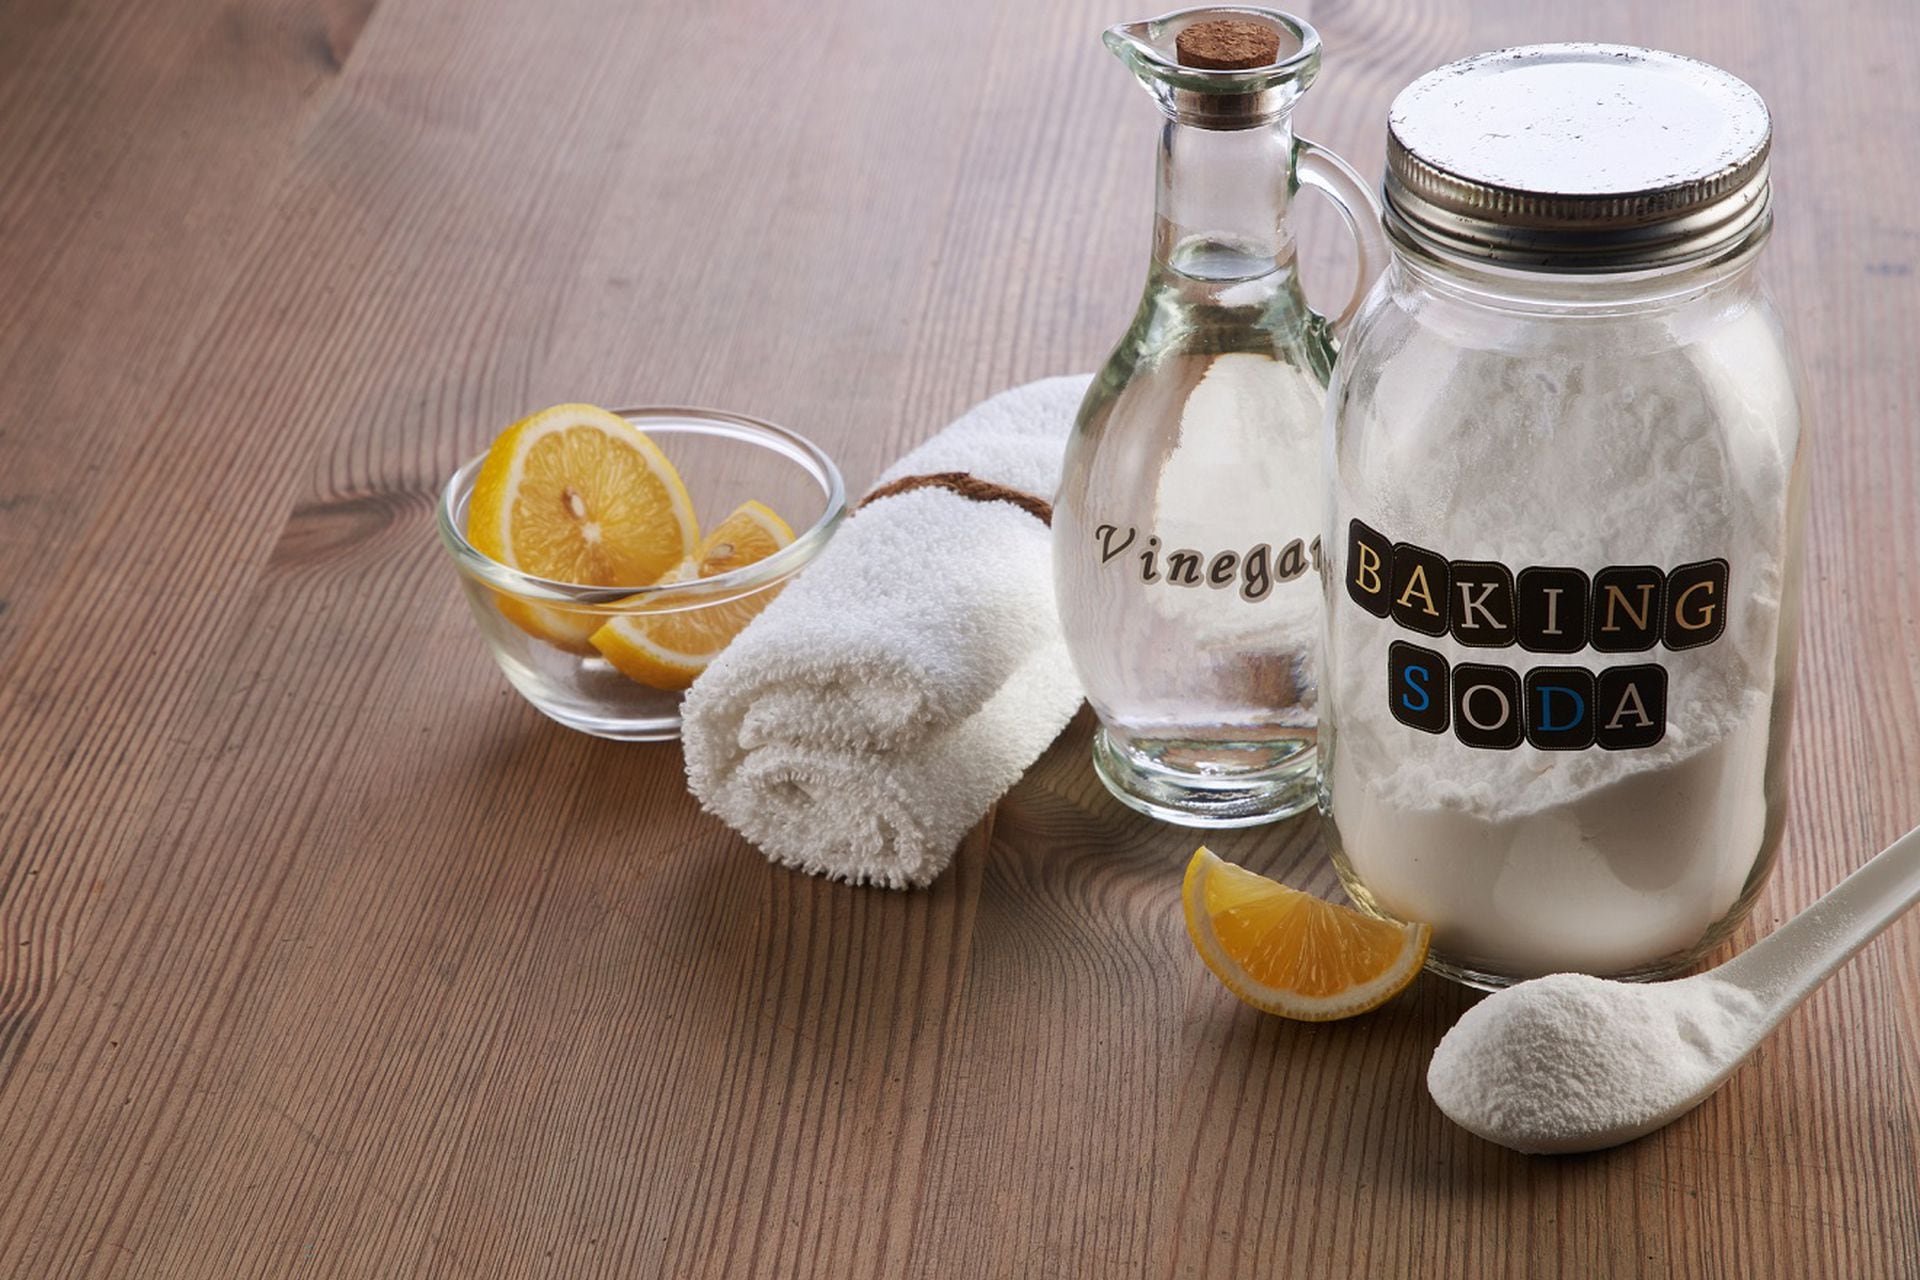 Cómo se usa el bicarbonato de sodio para limpiar?